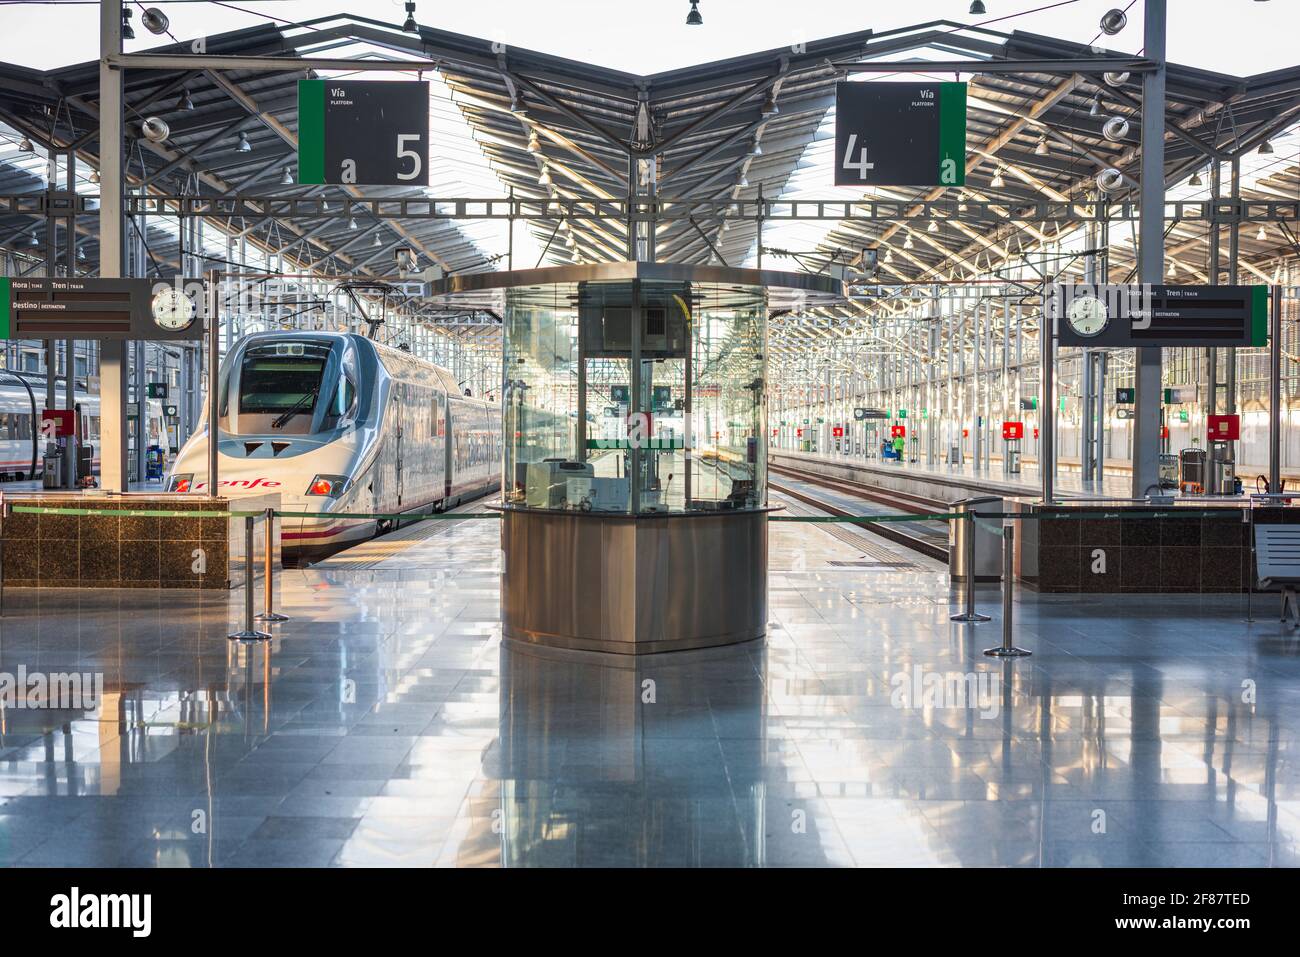 MALAGA, Spagna - 14 novembre 2014: via terminale in Malaga Maria Zambrano stazione ferroviaria. è la principale stazione ferroviaria della città Malaga. Foto Stock